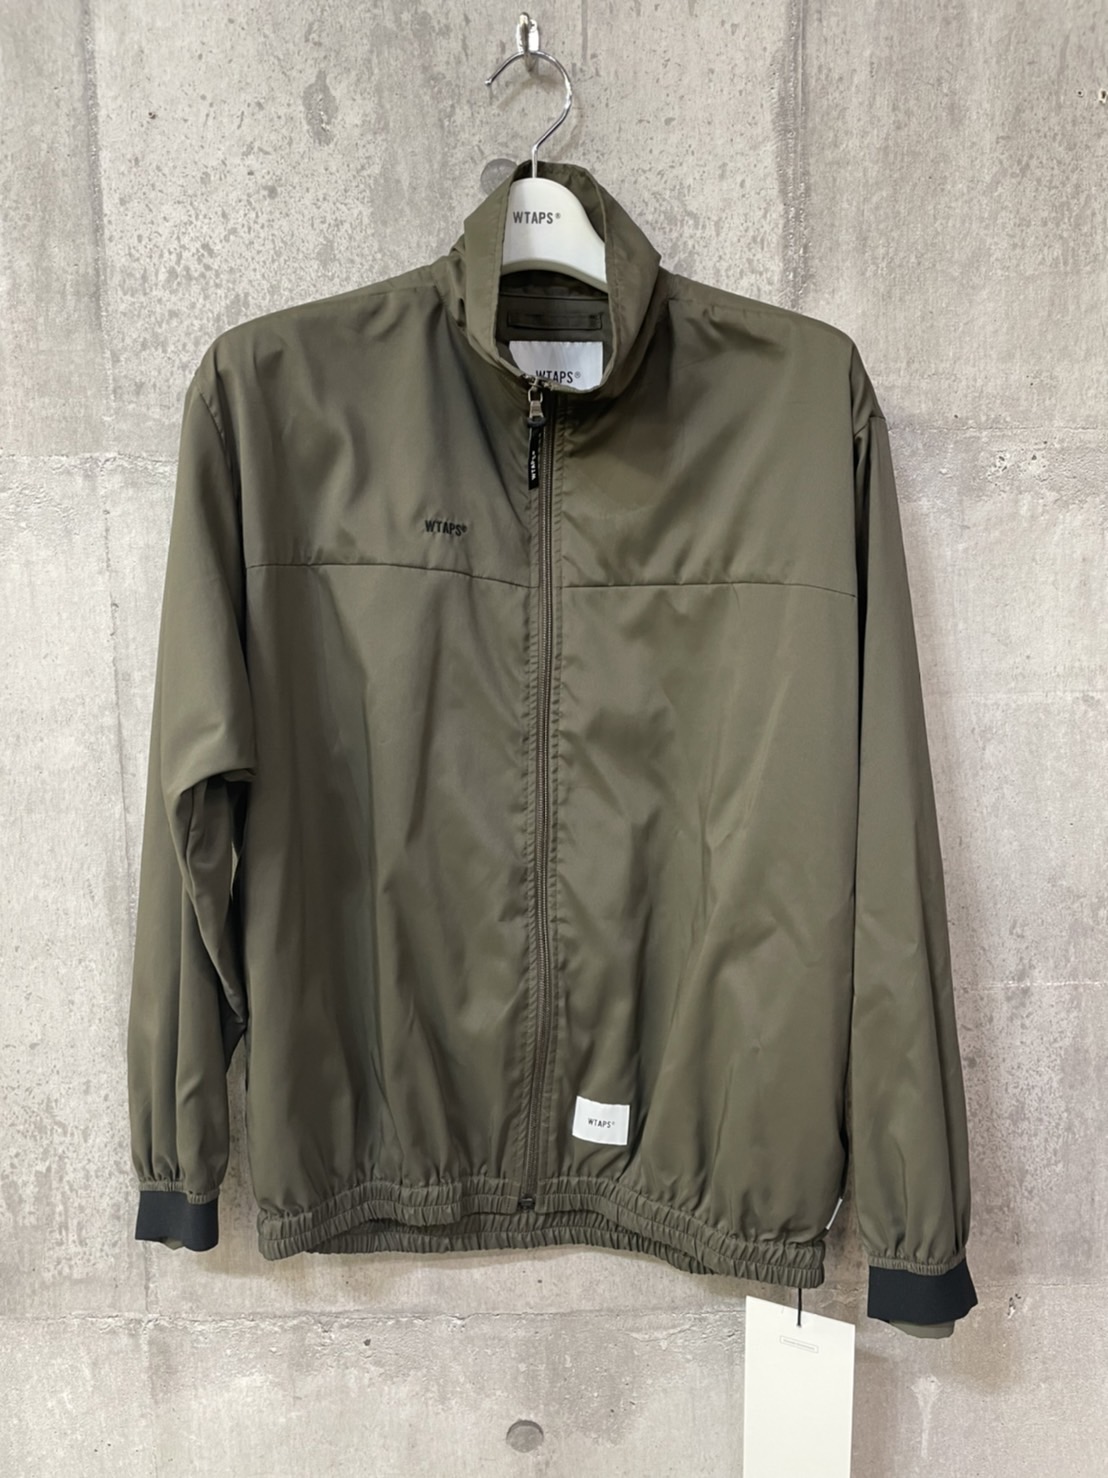 16,450円美品 Wtaps academy jacket